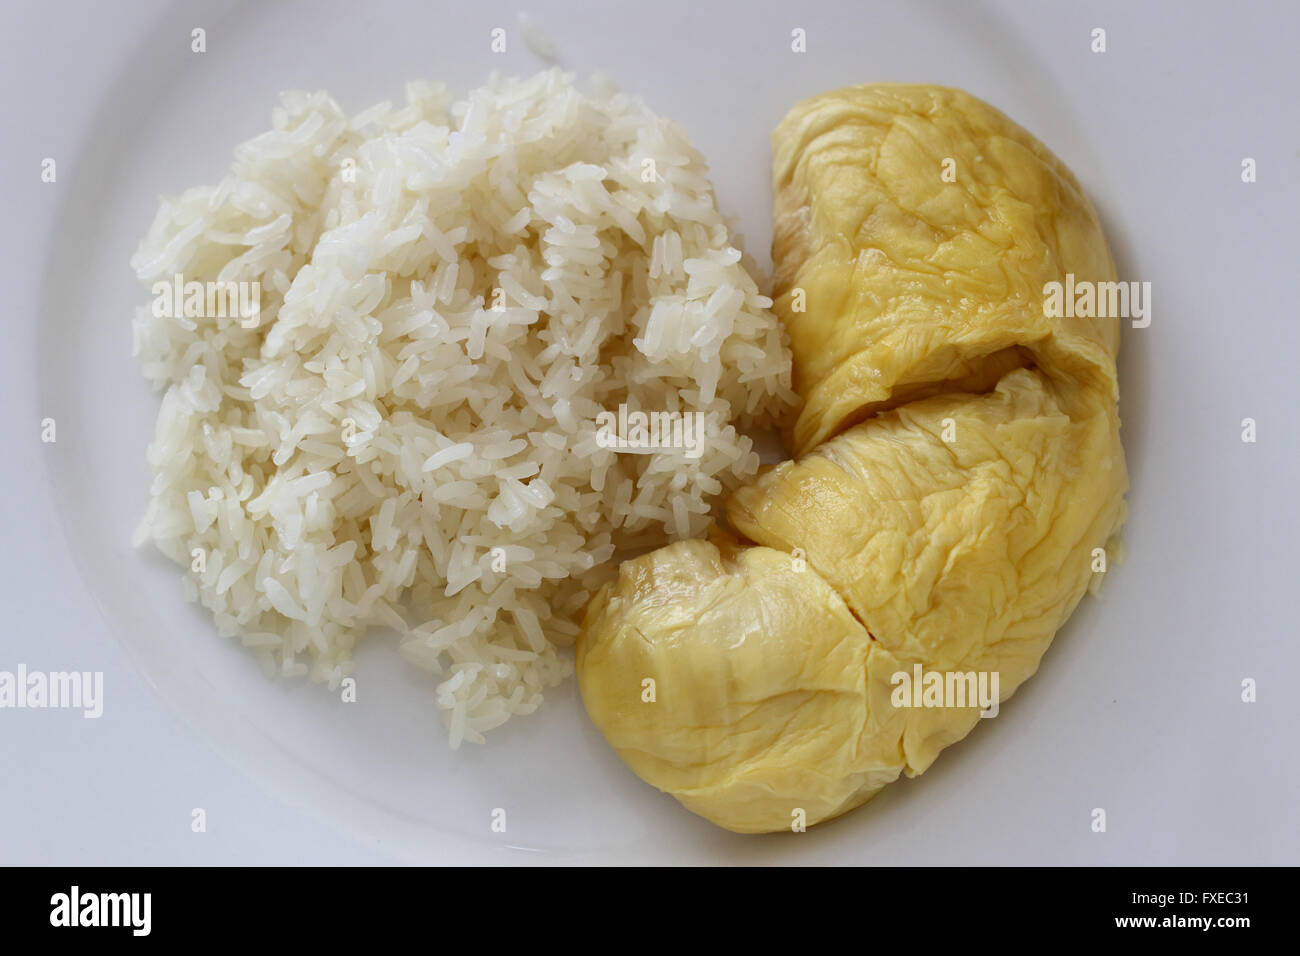 Pulut durian kelantan